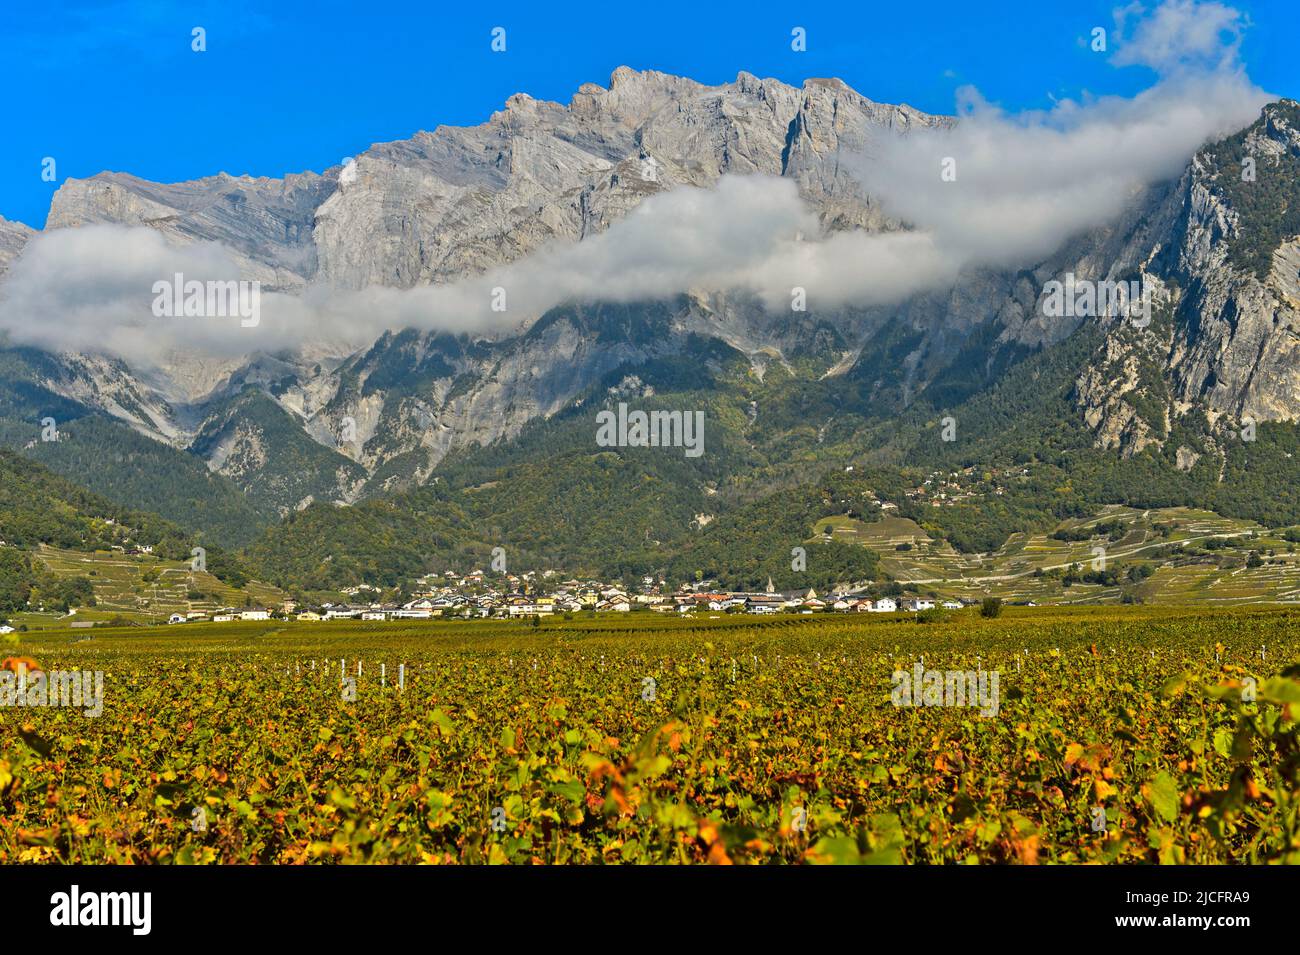 Il villaggio del vino di Chamoson circondato da vigneti di fronte alle pareti rocciose del picco Haut de Cry, Chamoson, Vallese, Svizzera Foto Stock